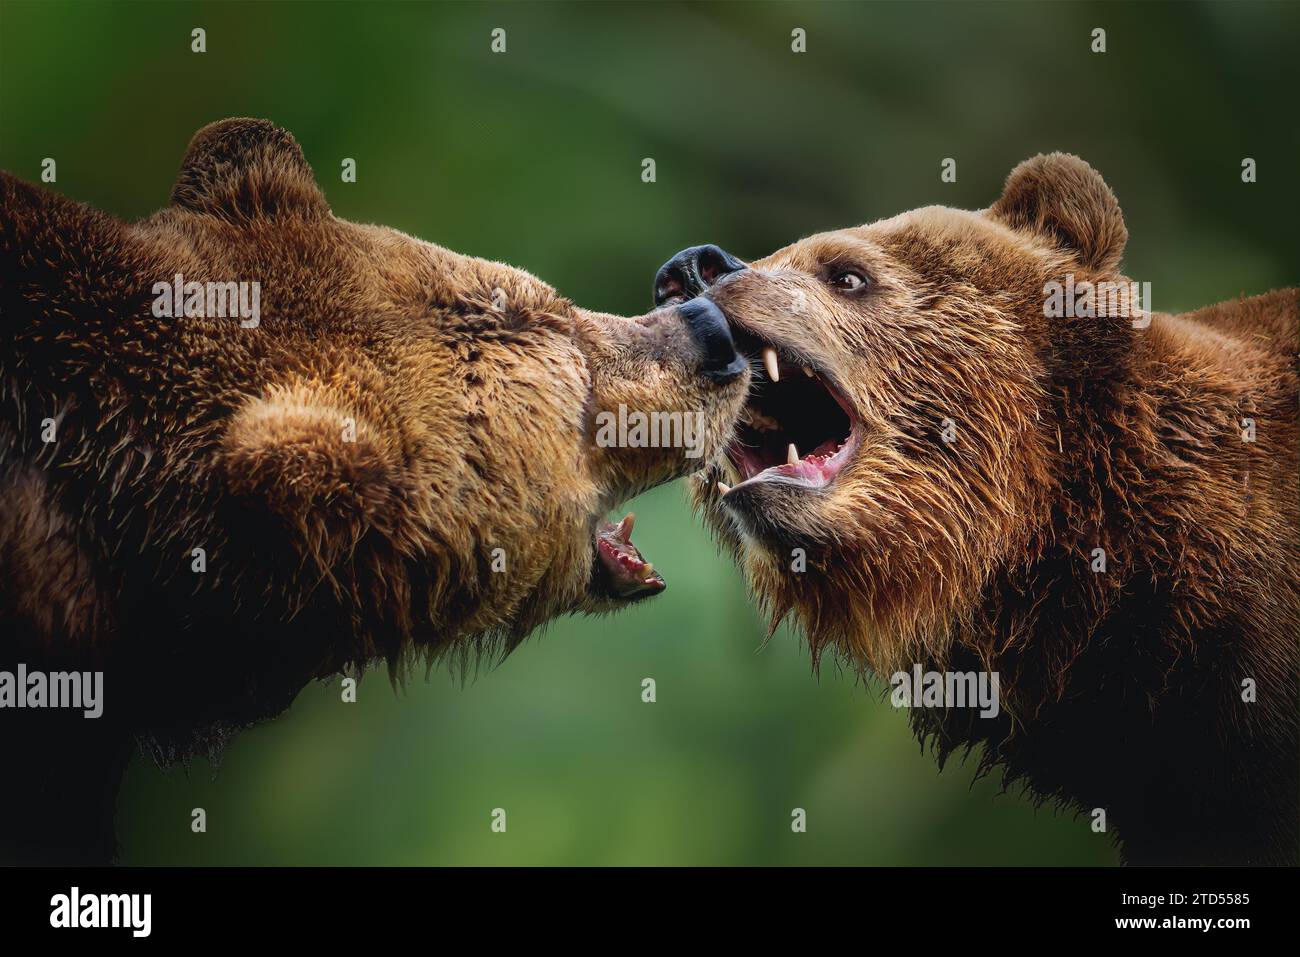 Coppia di orsi bruni che combattono o giocano (Ursus arctos) Foto Stock